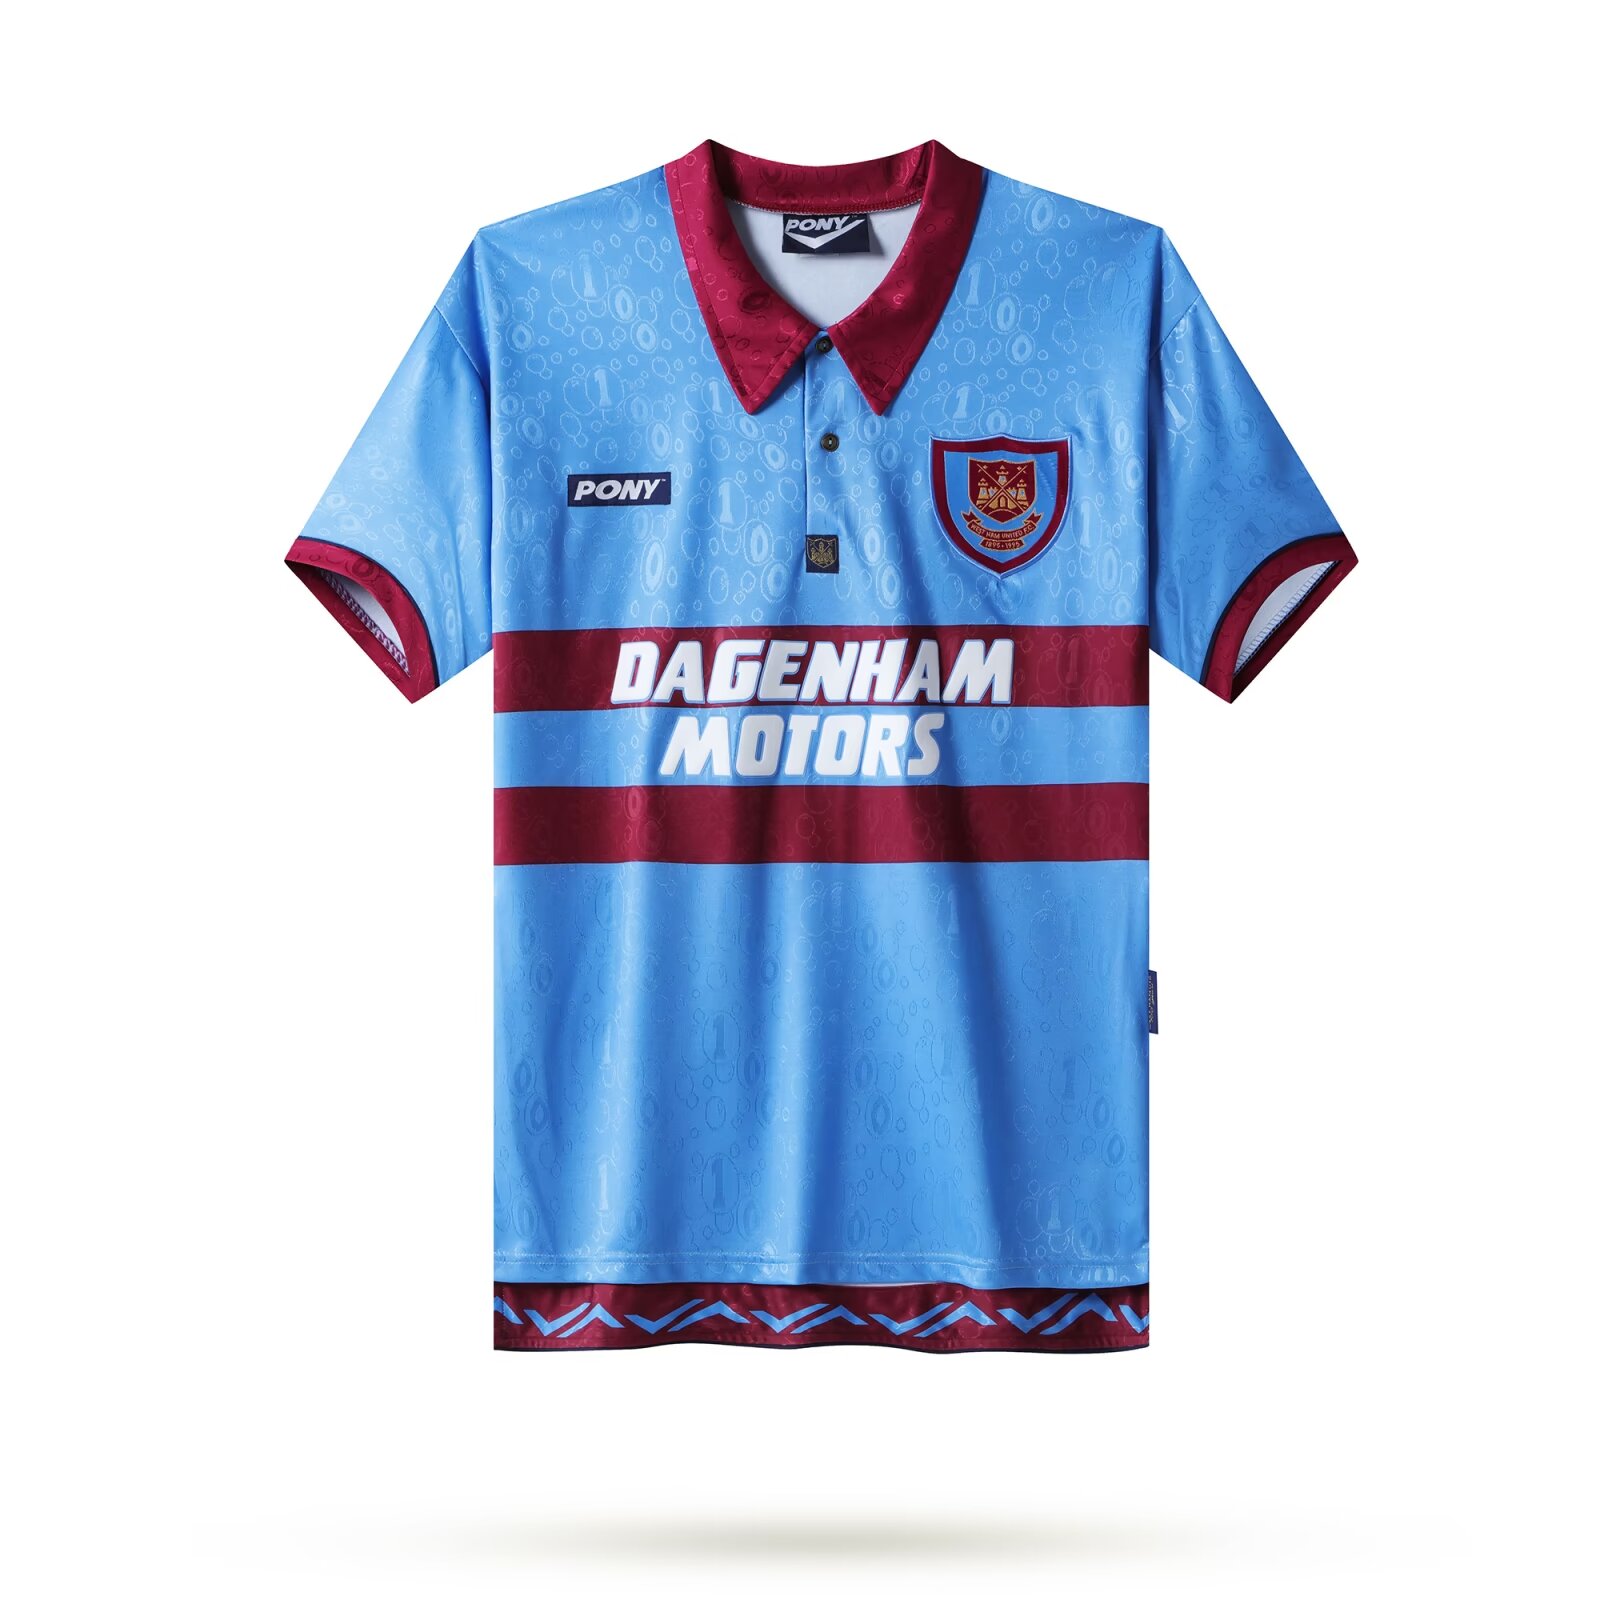 1995-1997 West Ham United Long sleeved retro